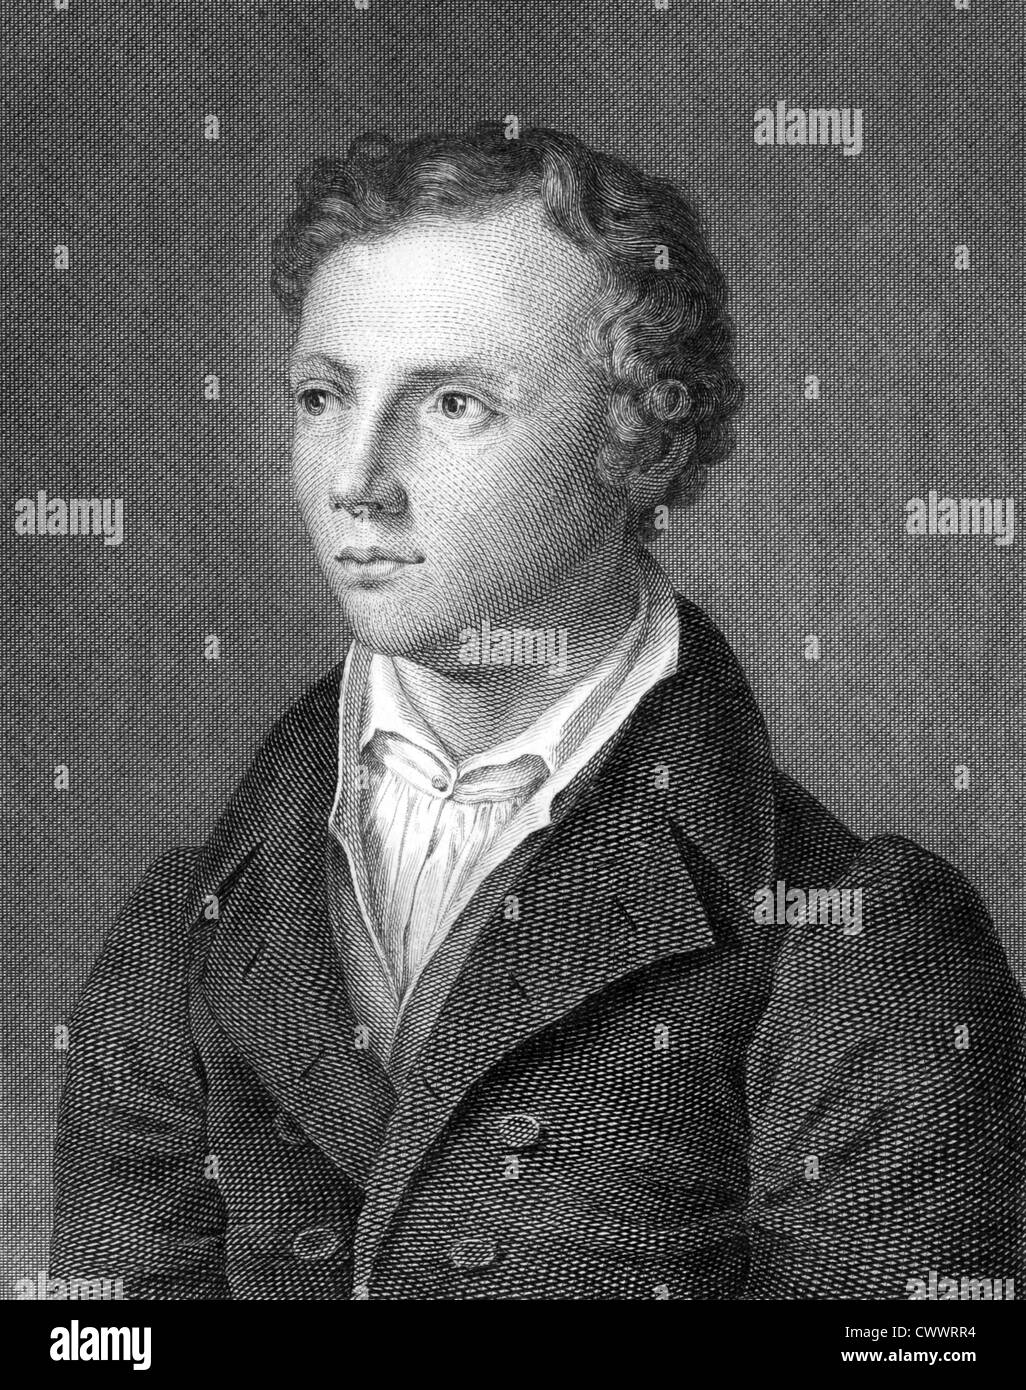 Ludwig Uhland (1787-1862) auf Kupferstich aus dem Jahr 1859. Deutscher Dichter, Philologe und Literaturhistoriker. Stockfoto